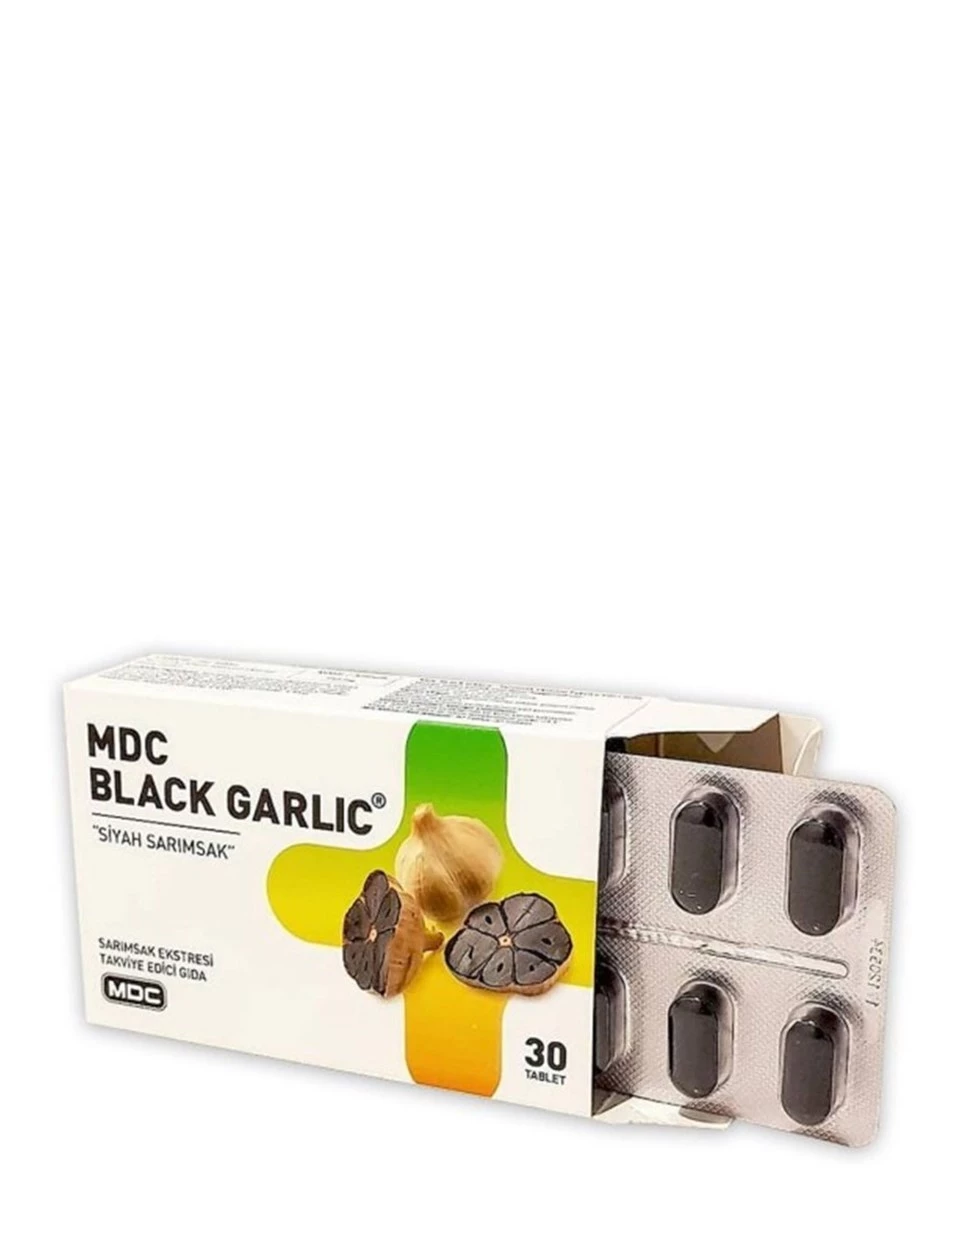 MDC Black Garlic Siyah Sarımsak 30 Tablet